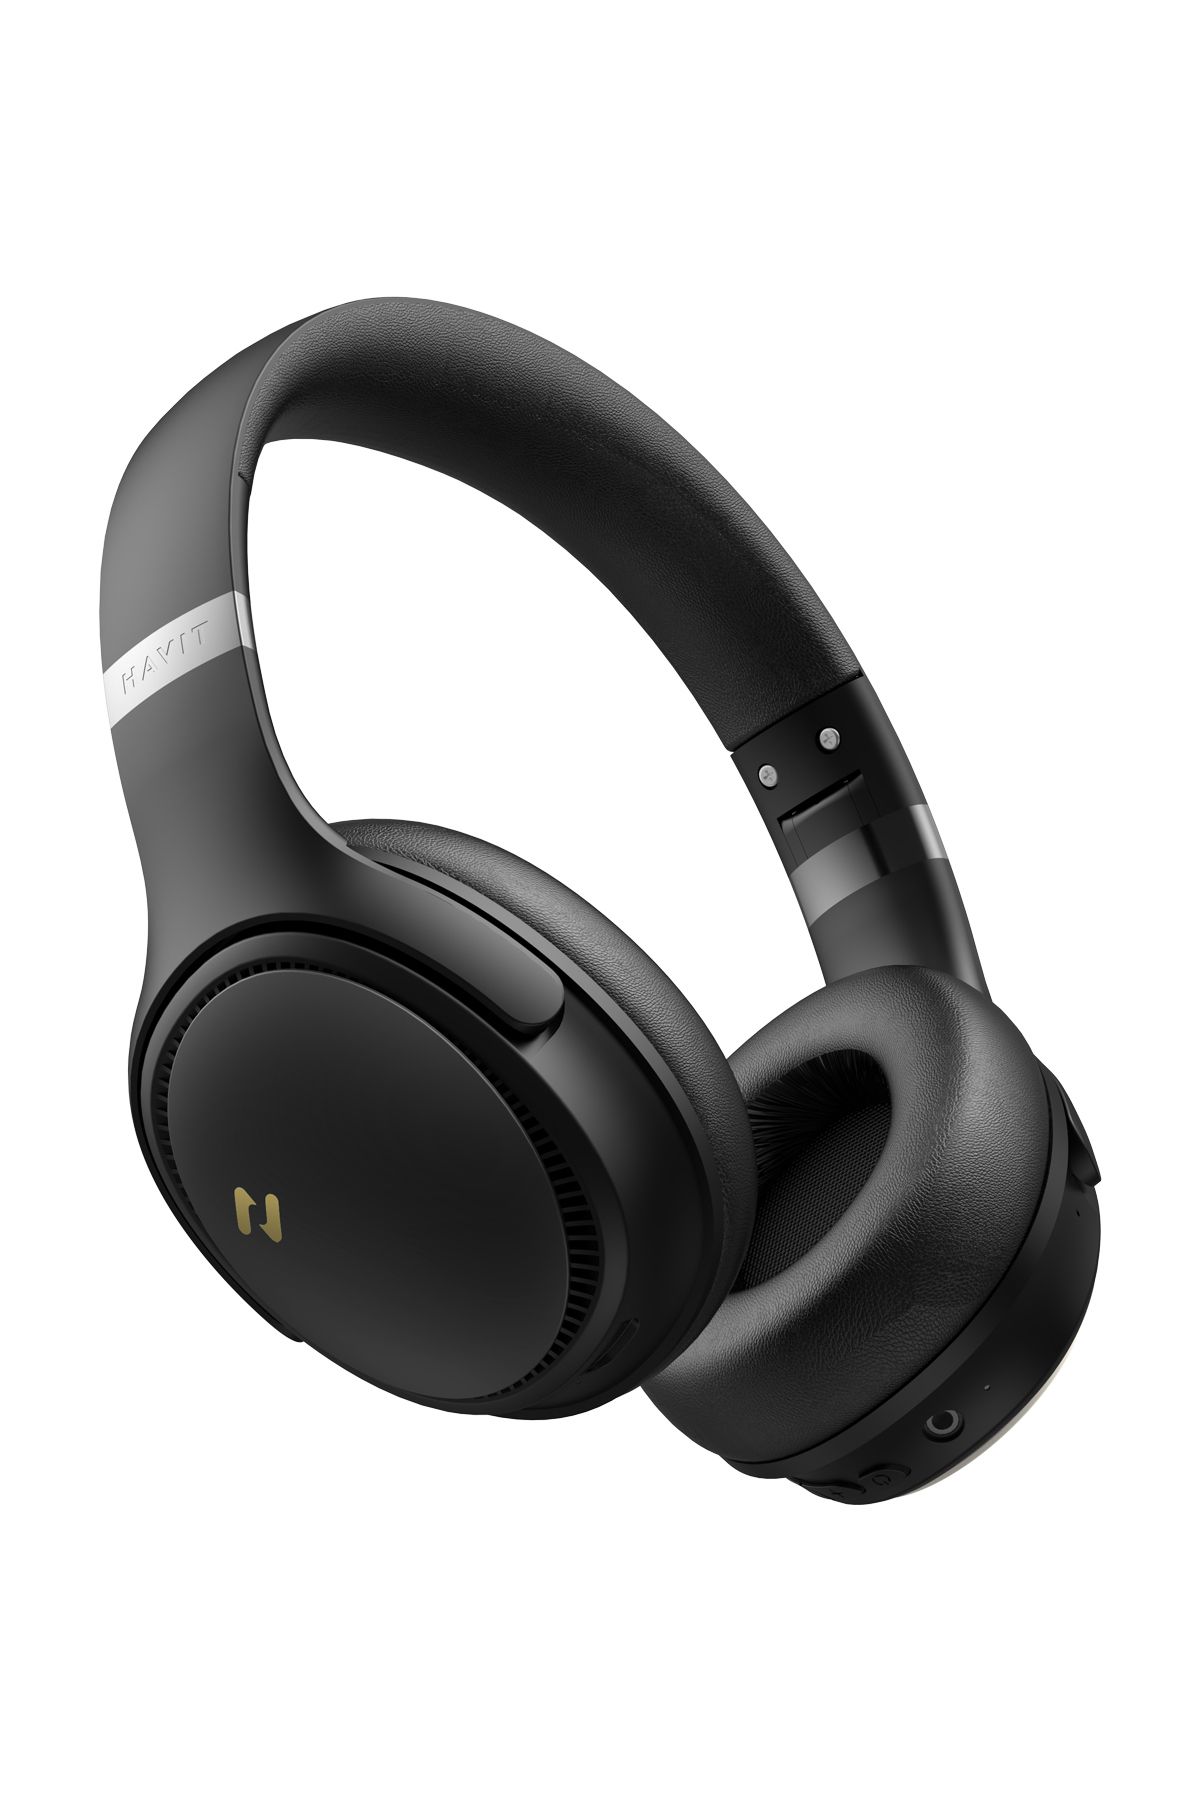 Havit H630BT PRO ANC Kulak Üstü Katlanabilir Bluetooth Kulaklık - 50 Saat Batarya Çift Cihaz Desteği